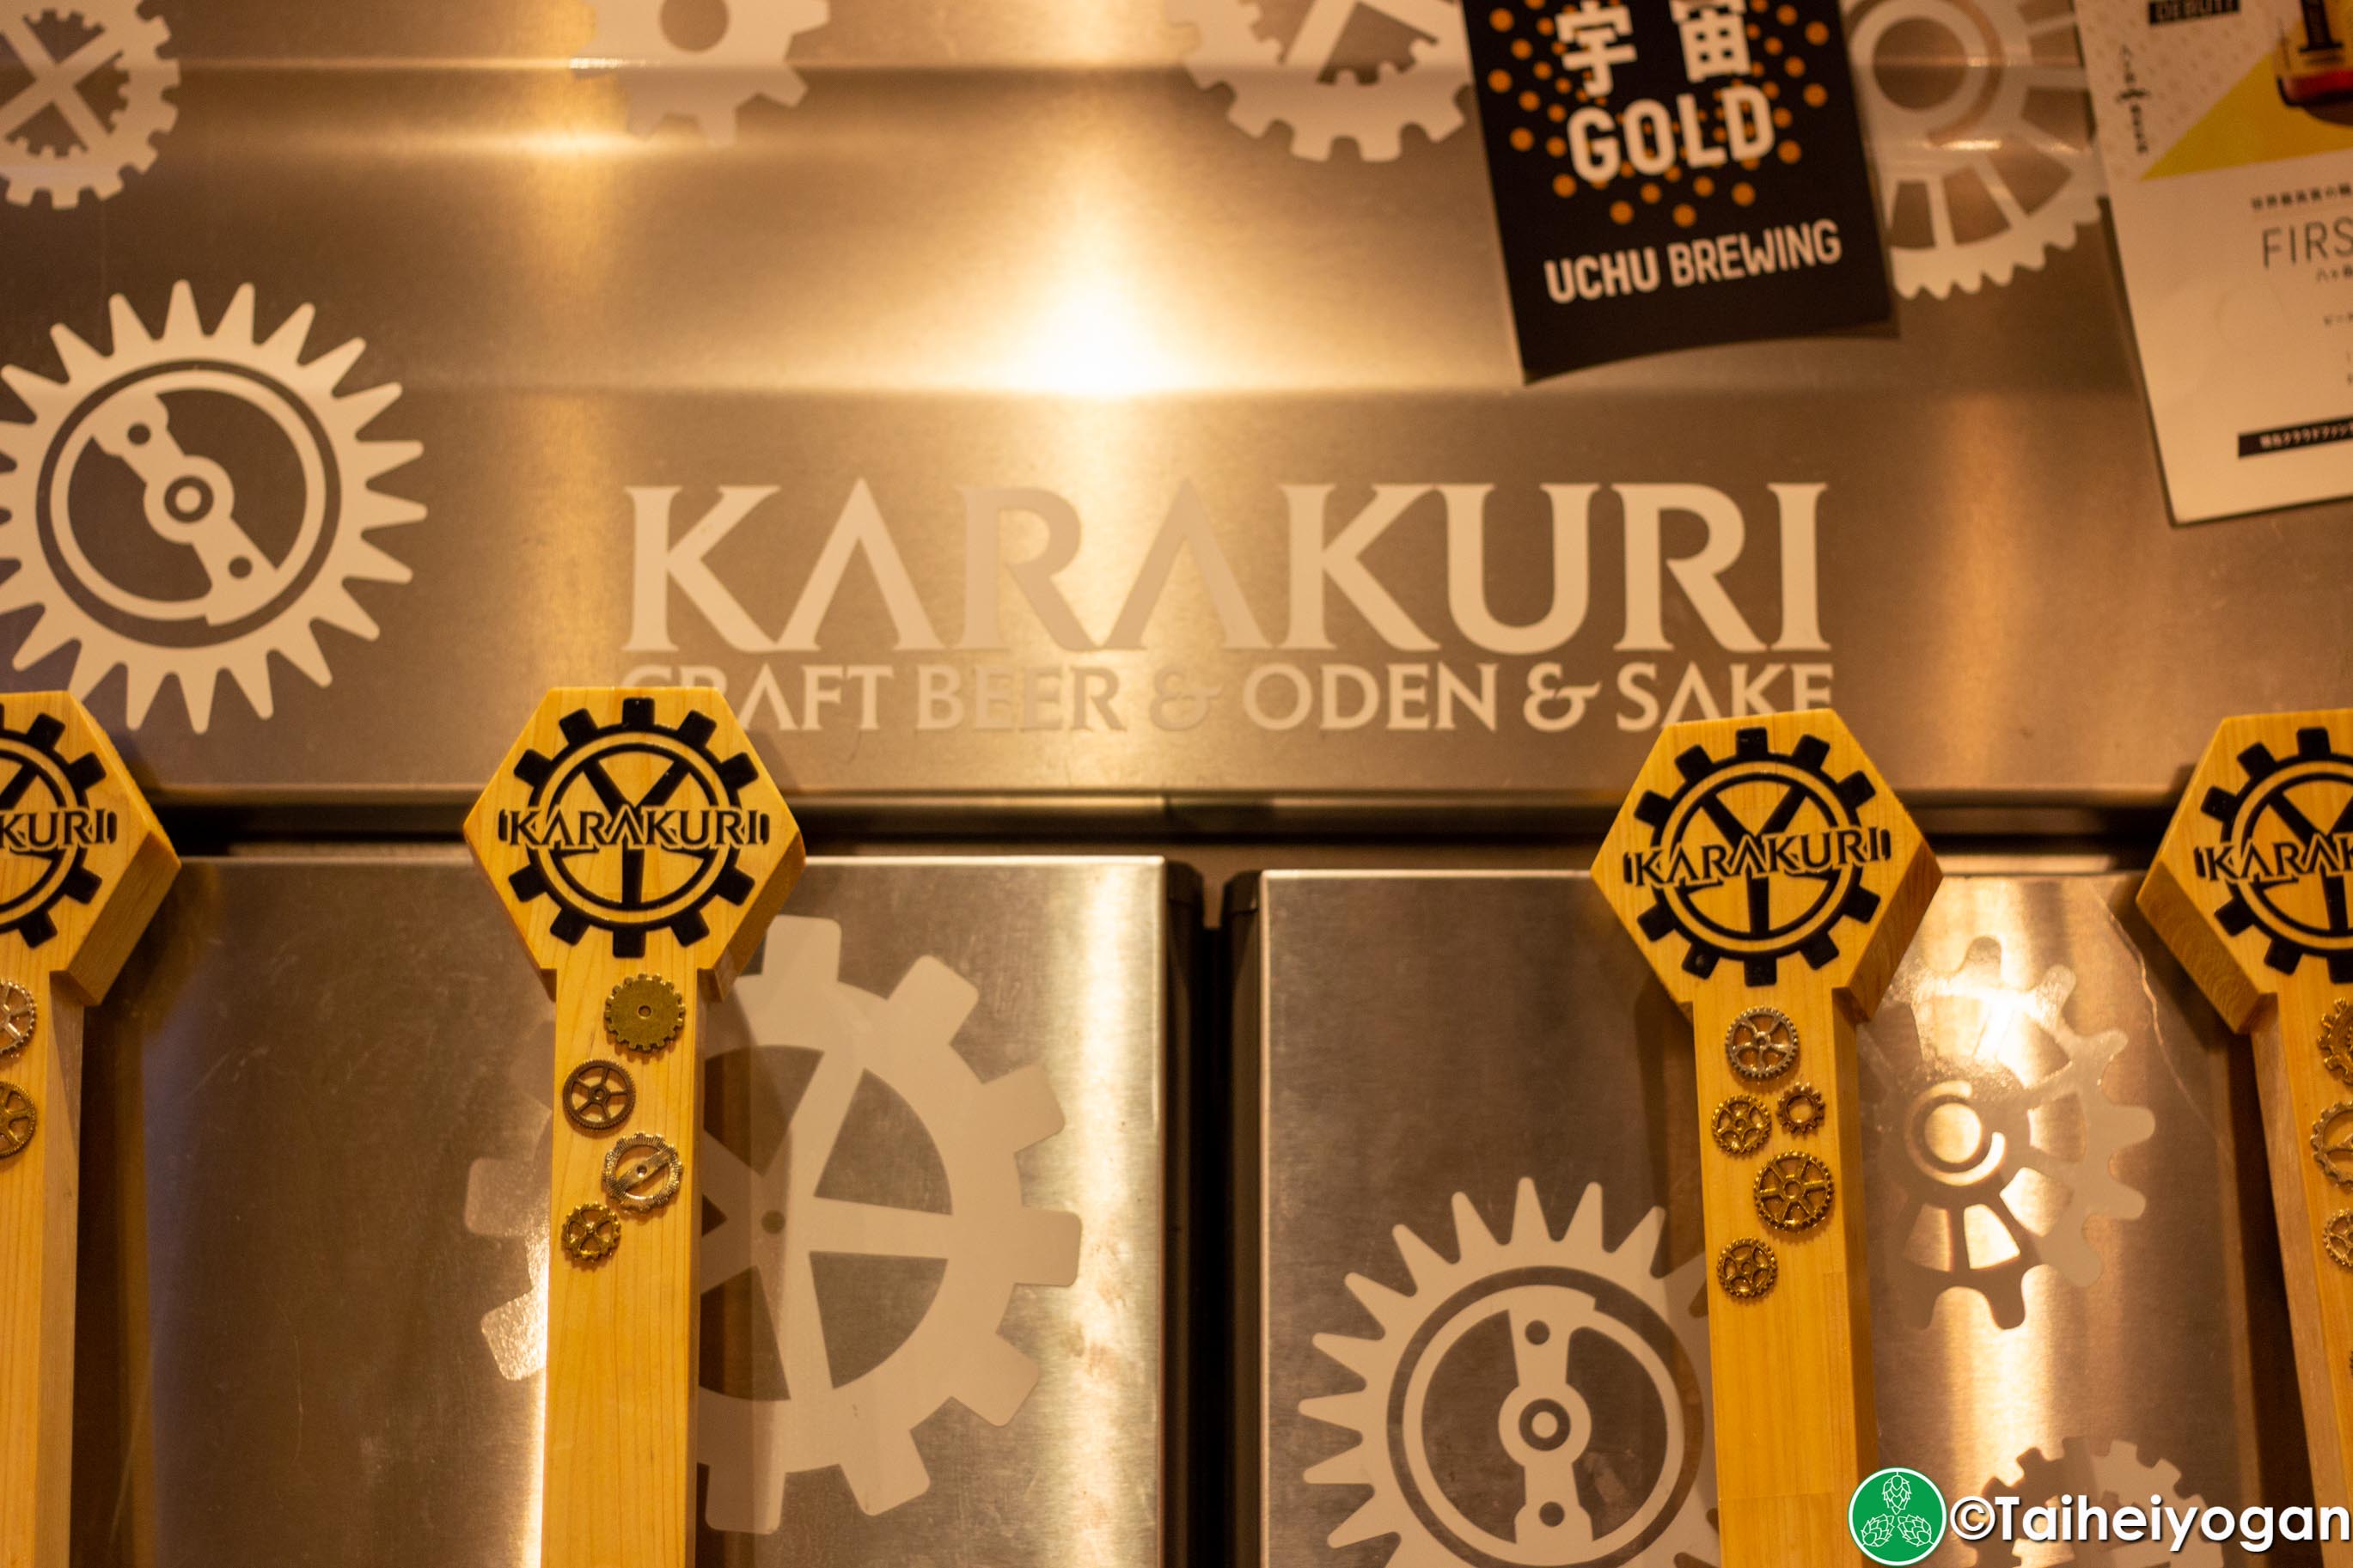 Karakuri Craft Beer & Oden & Sake - Interior - Beer Taps